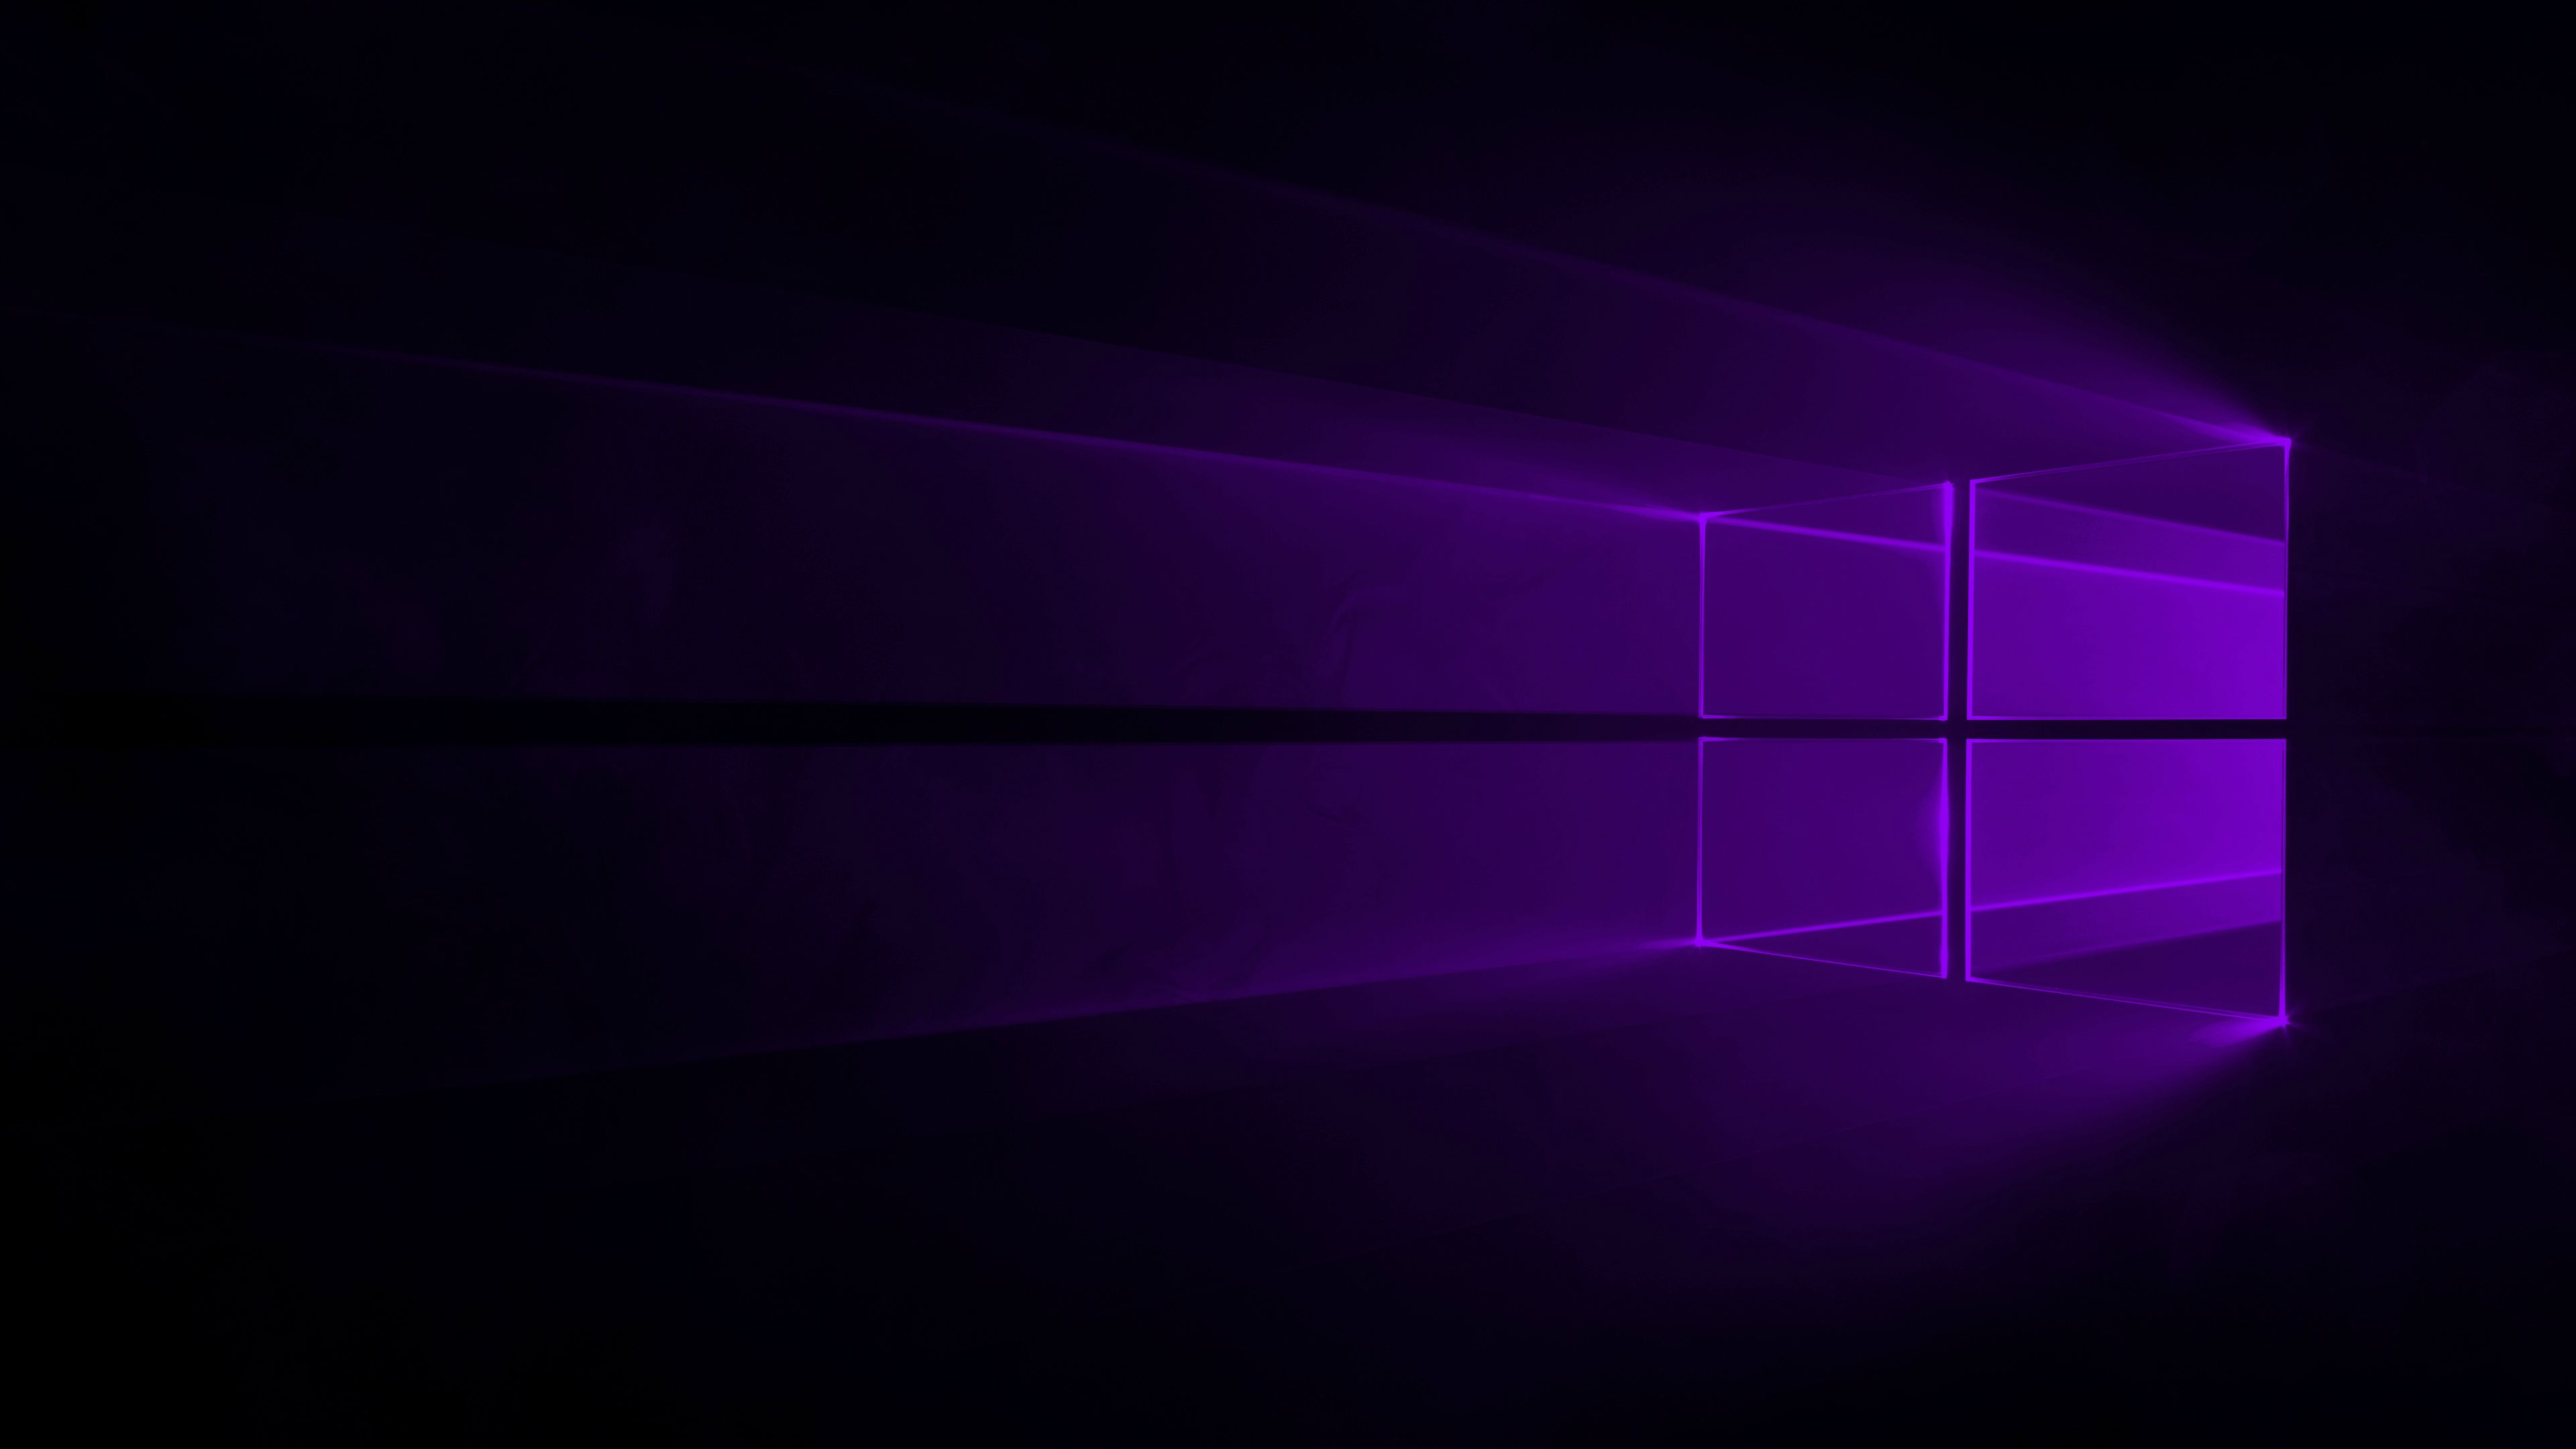 Windows 10 4K Purple Wallpapers